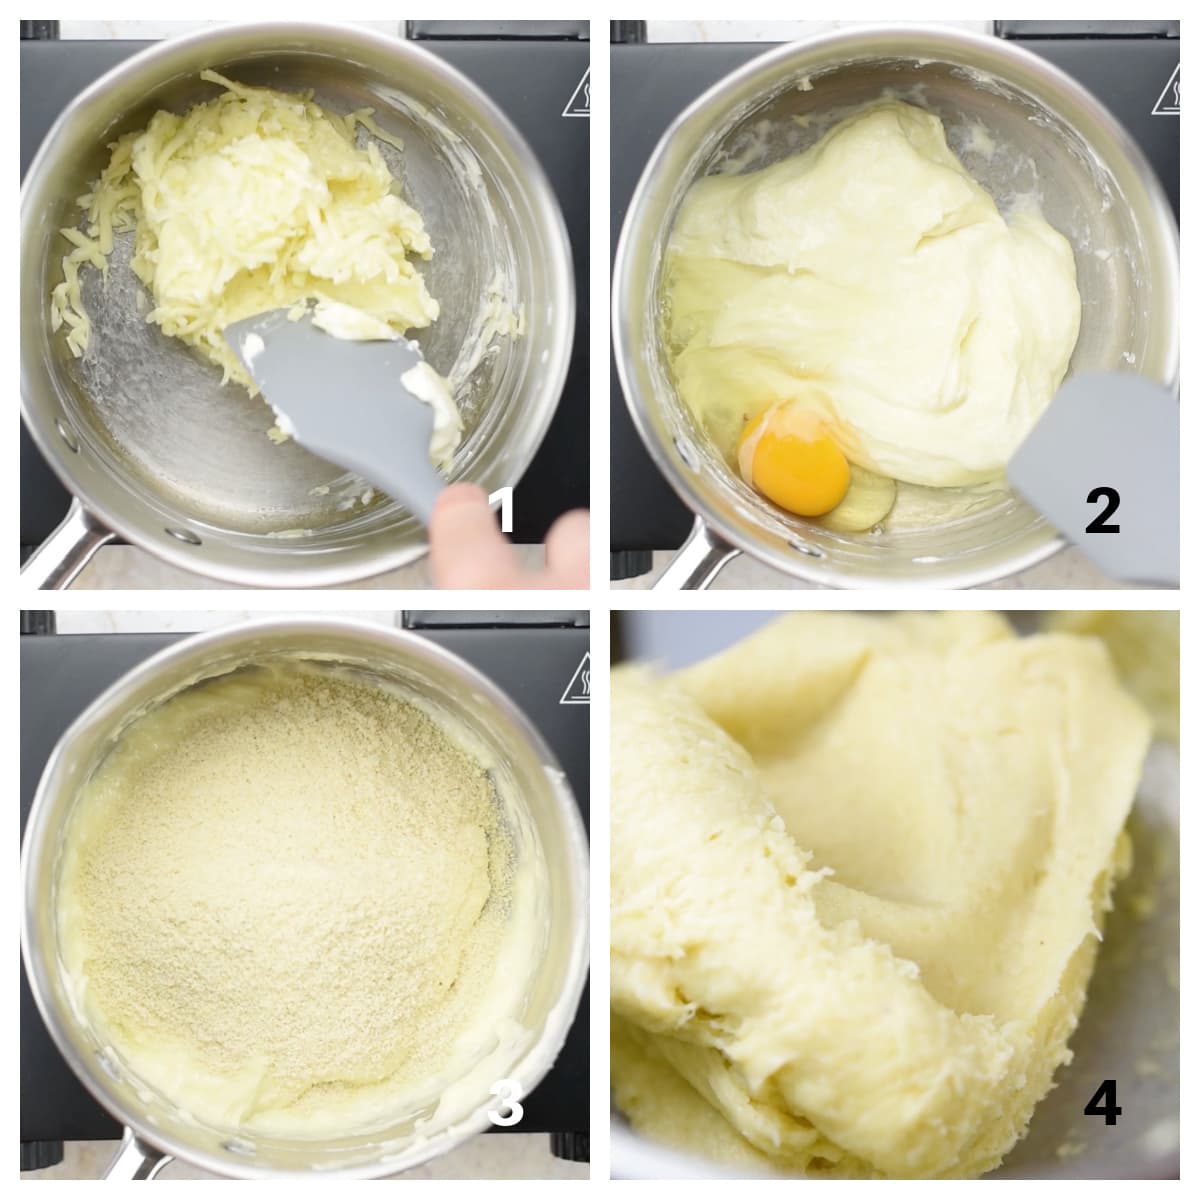 Melting mozzarella in a saucepan, adding egg, adding almond flour and kneading dough.